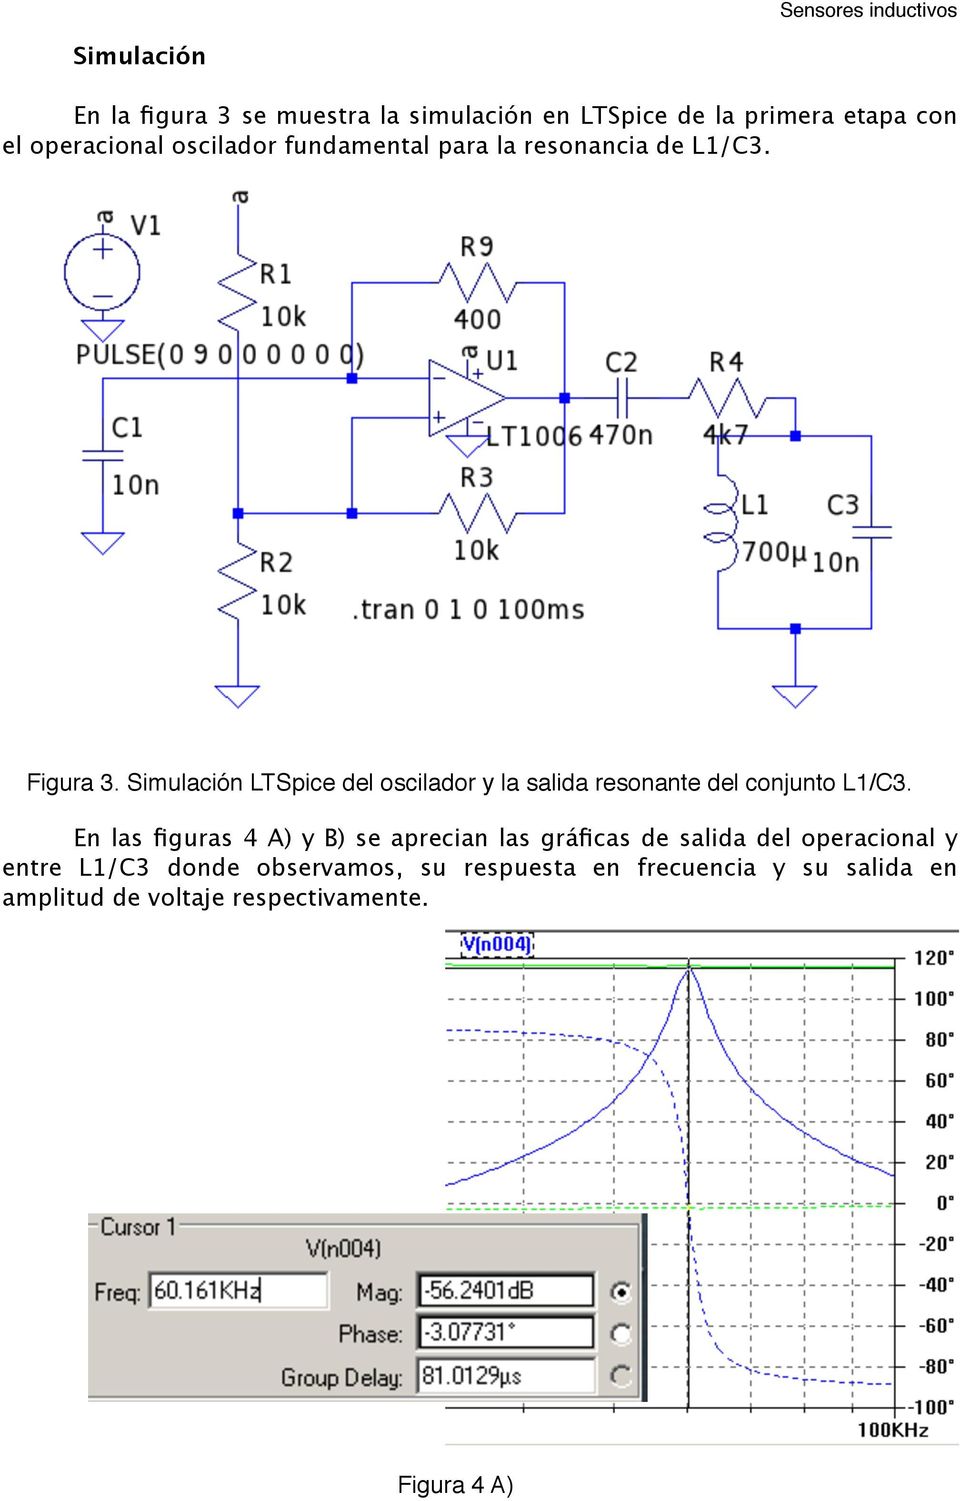 Simulación LTSpice del oscilador y la salida resonante del conjunto L1/C3.